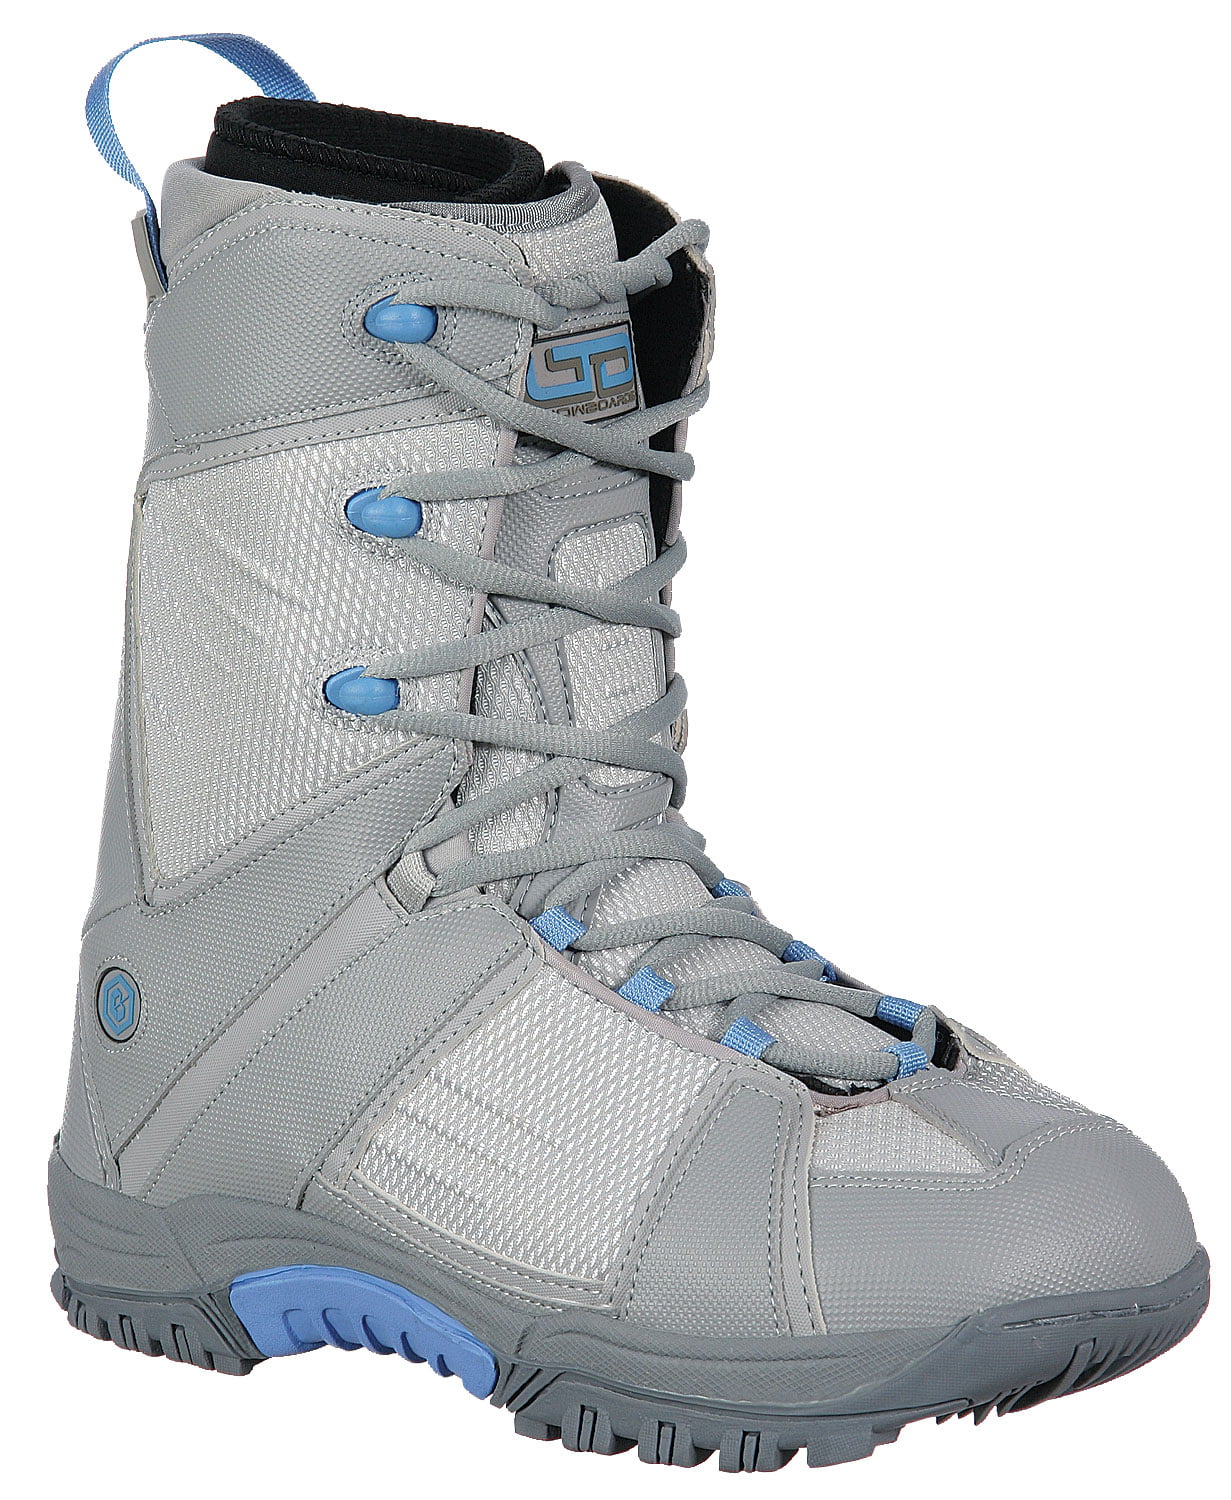 SKBAWA-000 Size 03 us LTD LT1 Jr 312166 Snowboard Boots Grey